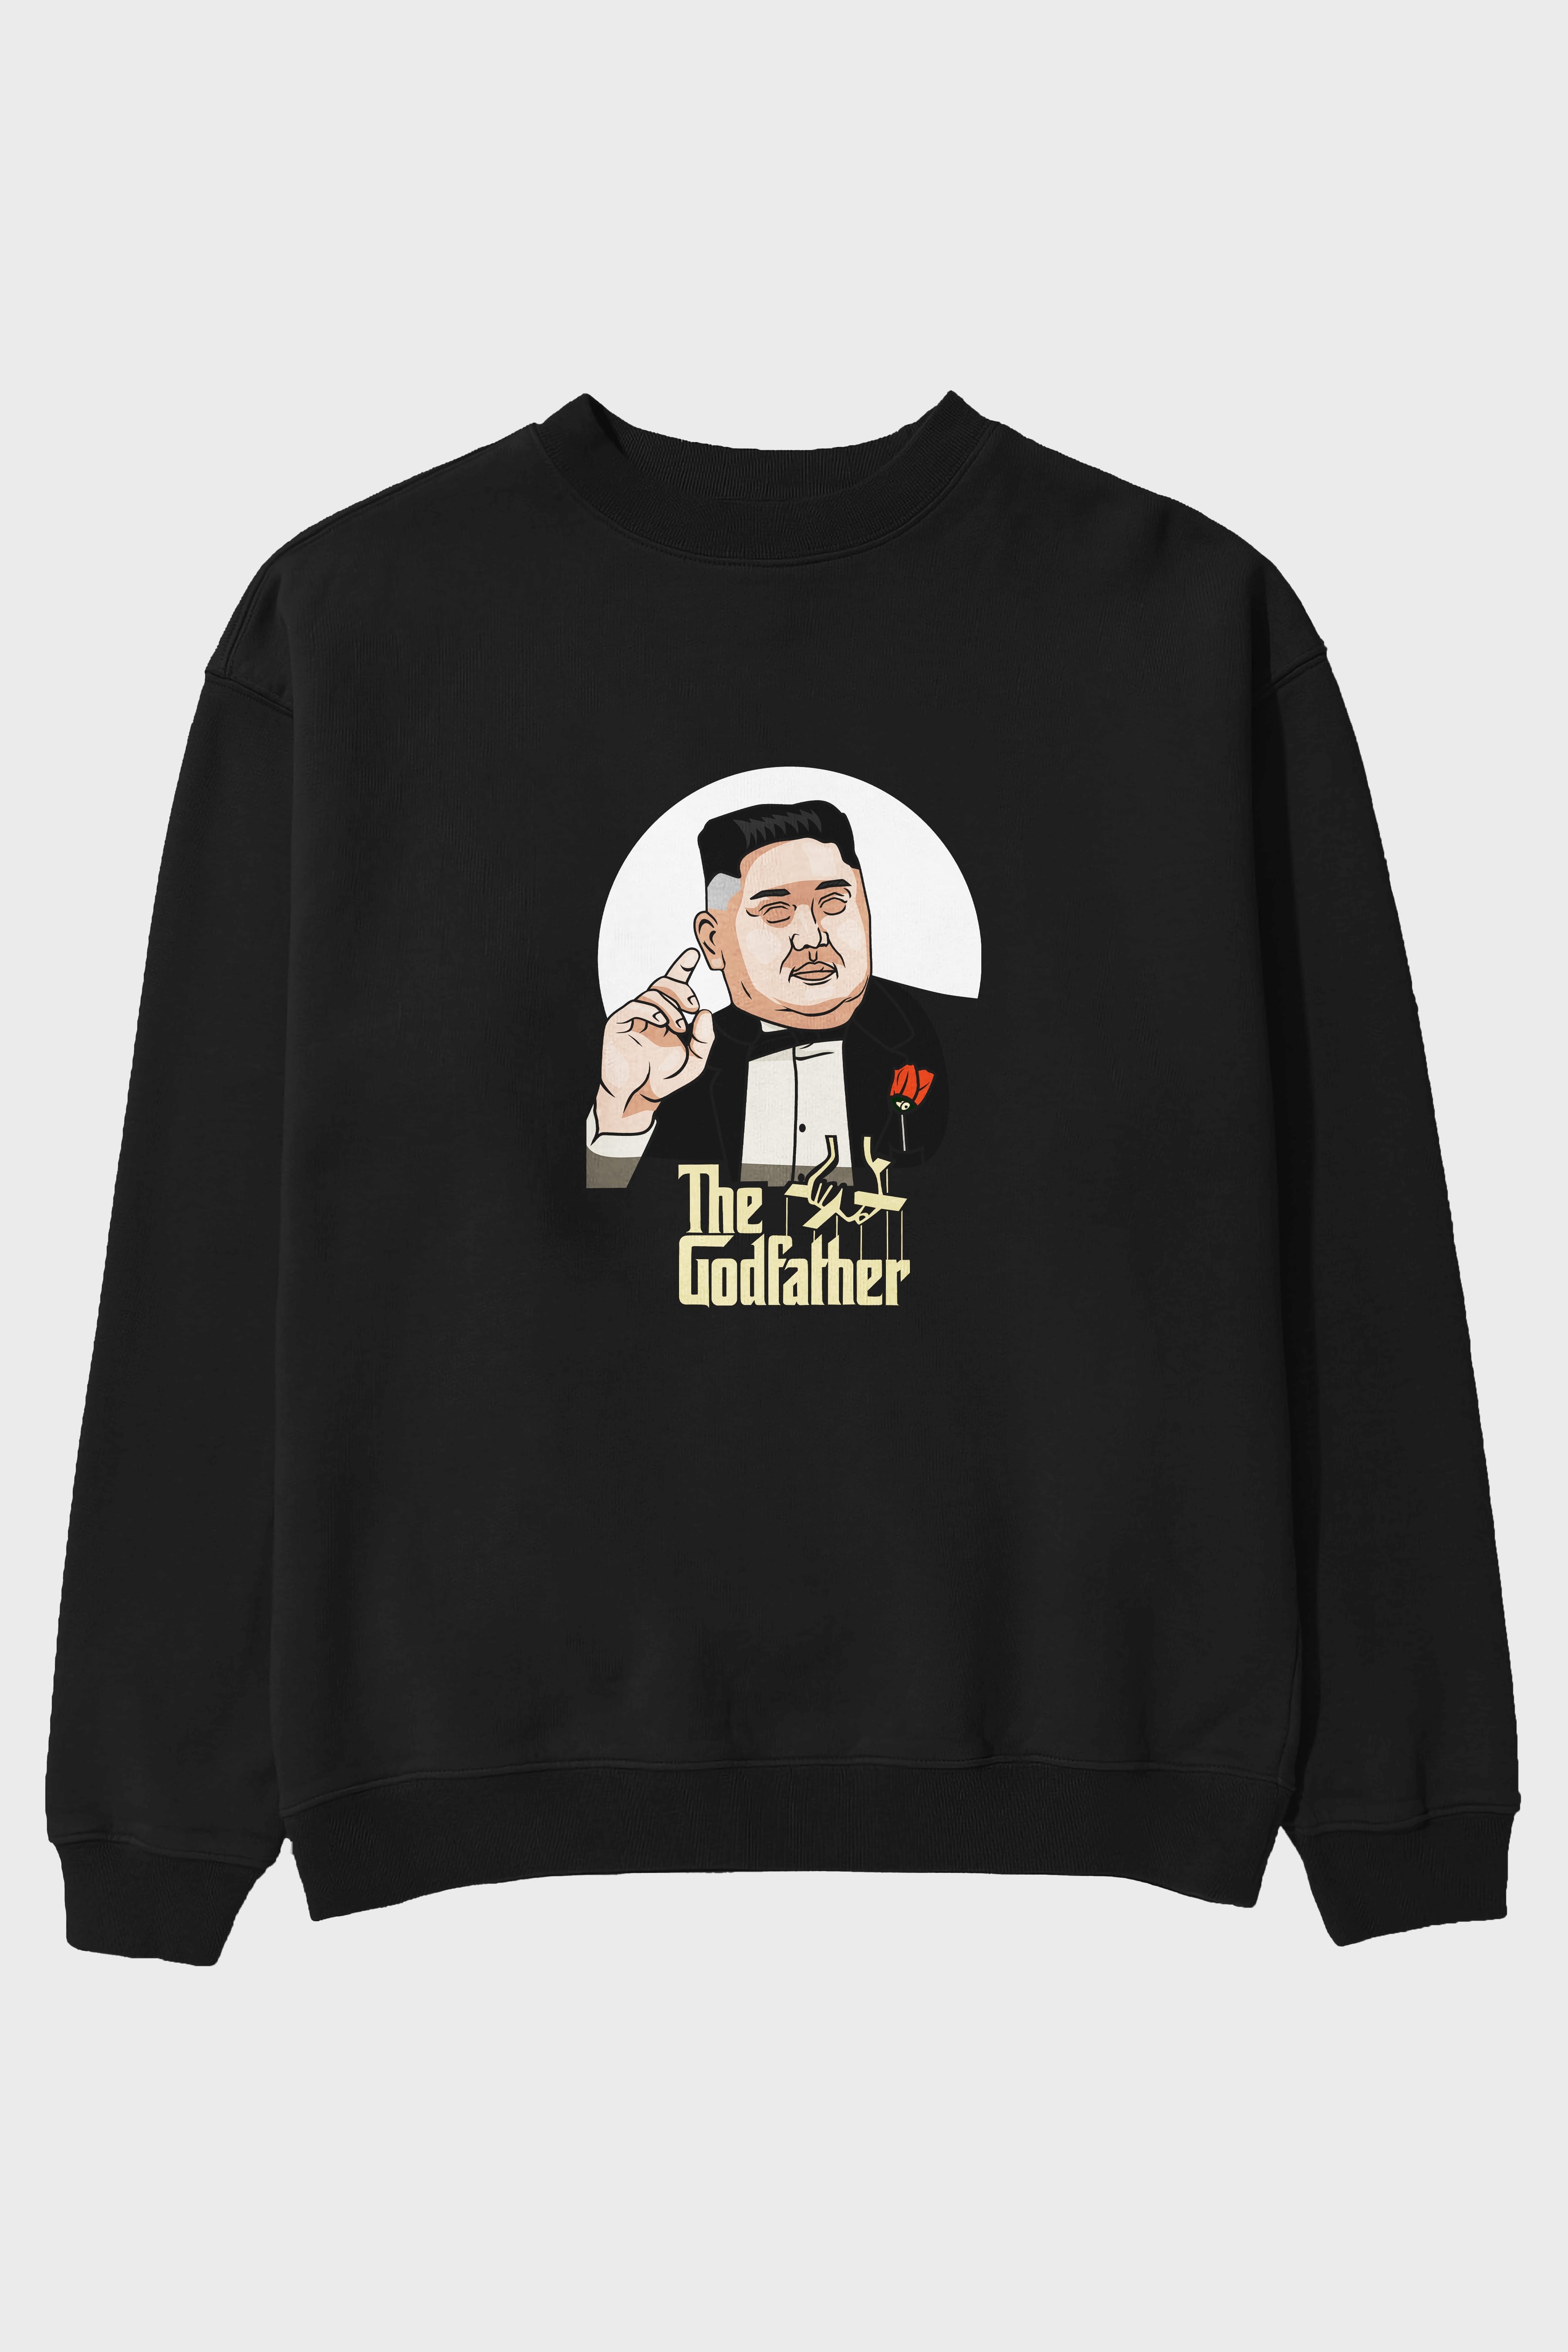 Godfather Jong Un Ön Baskılı Oversize Sweatshirt Erkek Kadın Unisex